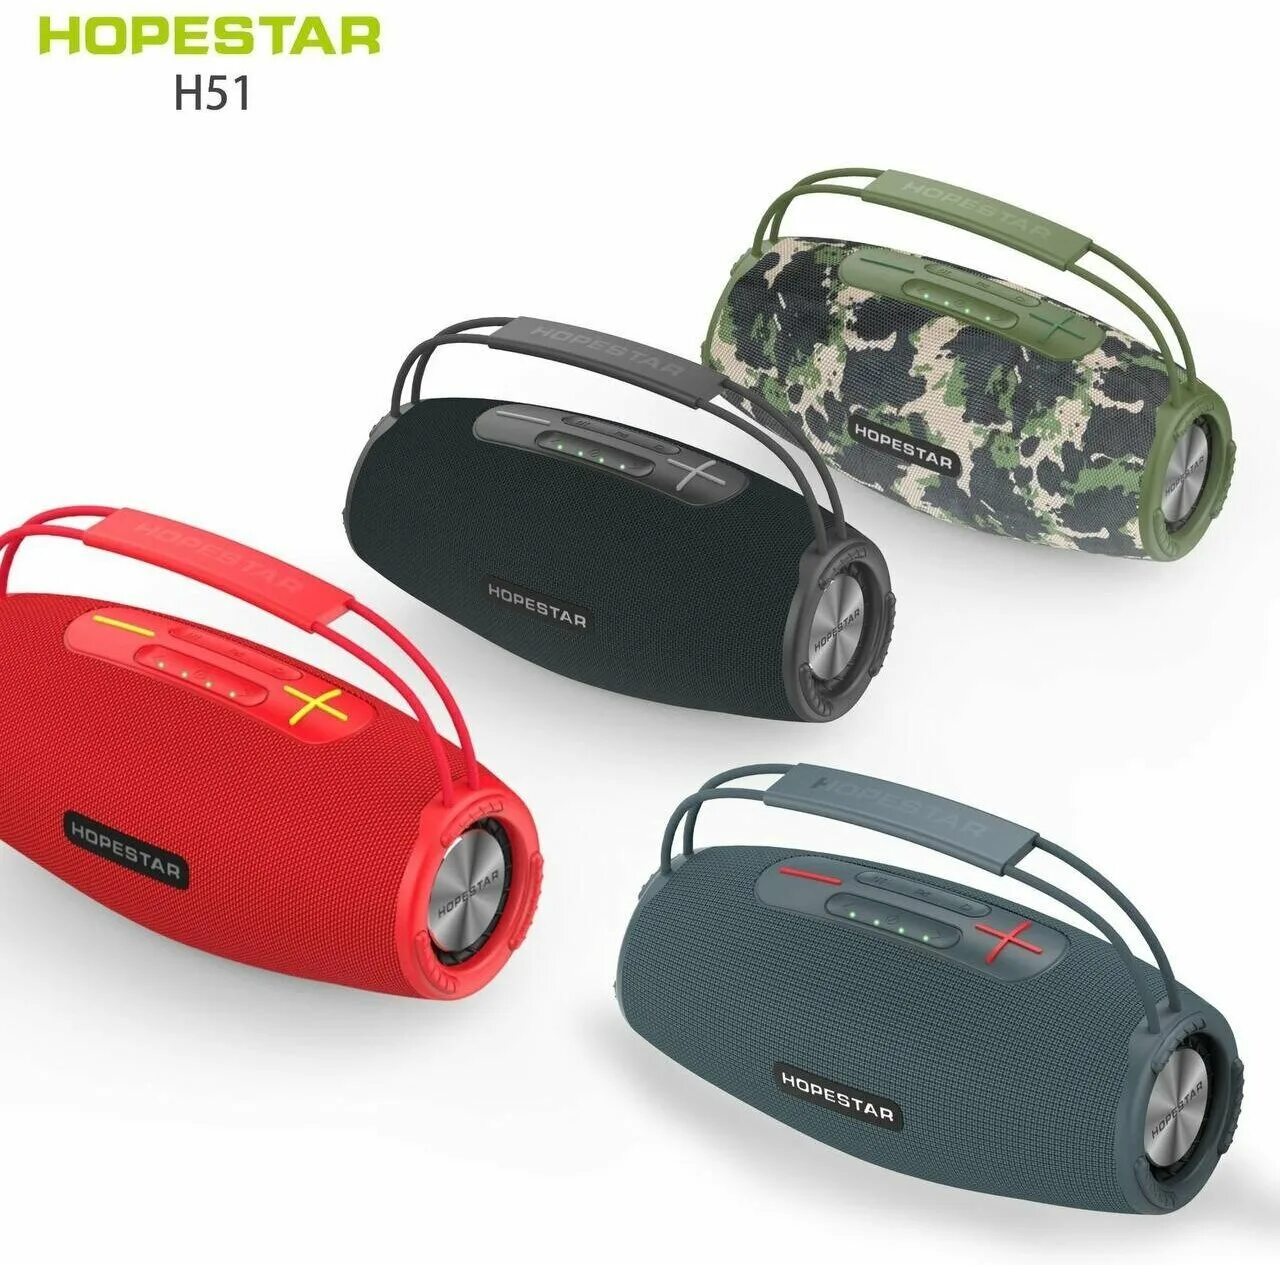 Hopestar h53. Колонка HOPESTAR h51. Портативная колонка HOPESTAR h51 (черный). HOPESTAR model h51 Speaker. HOPESTAR model h51 Speaker Board.